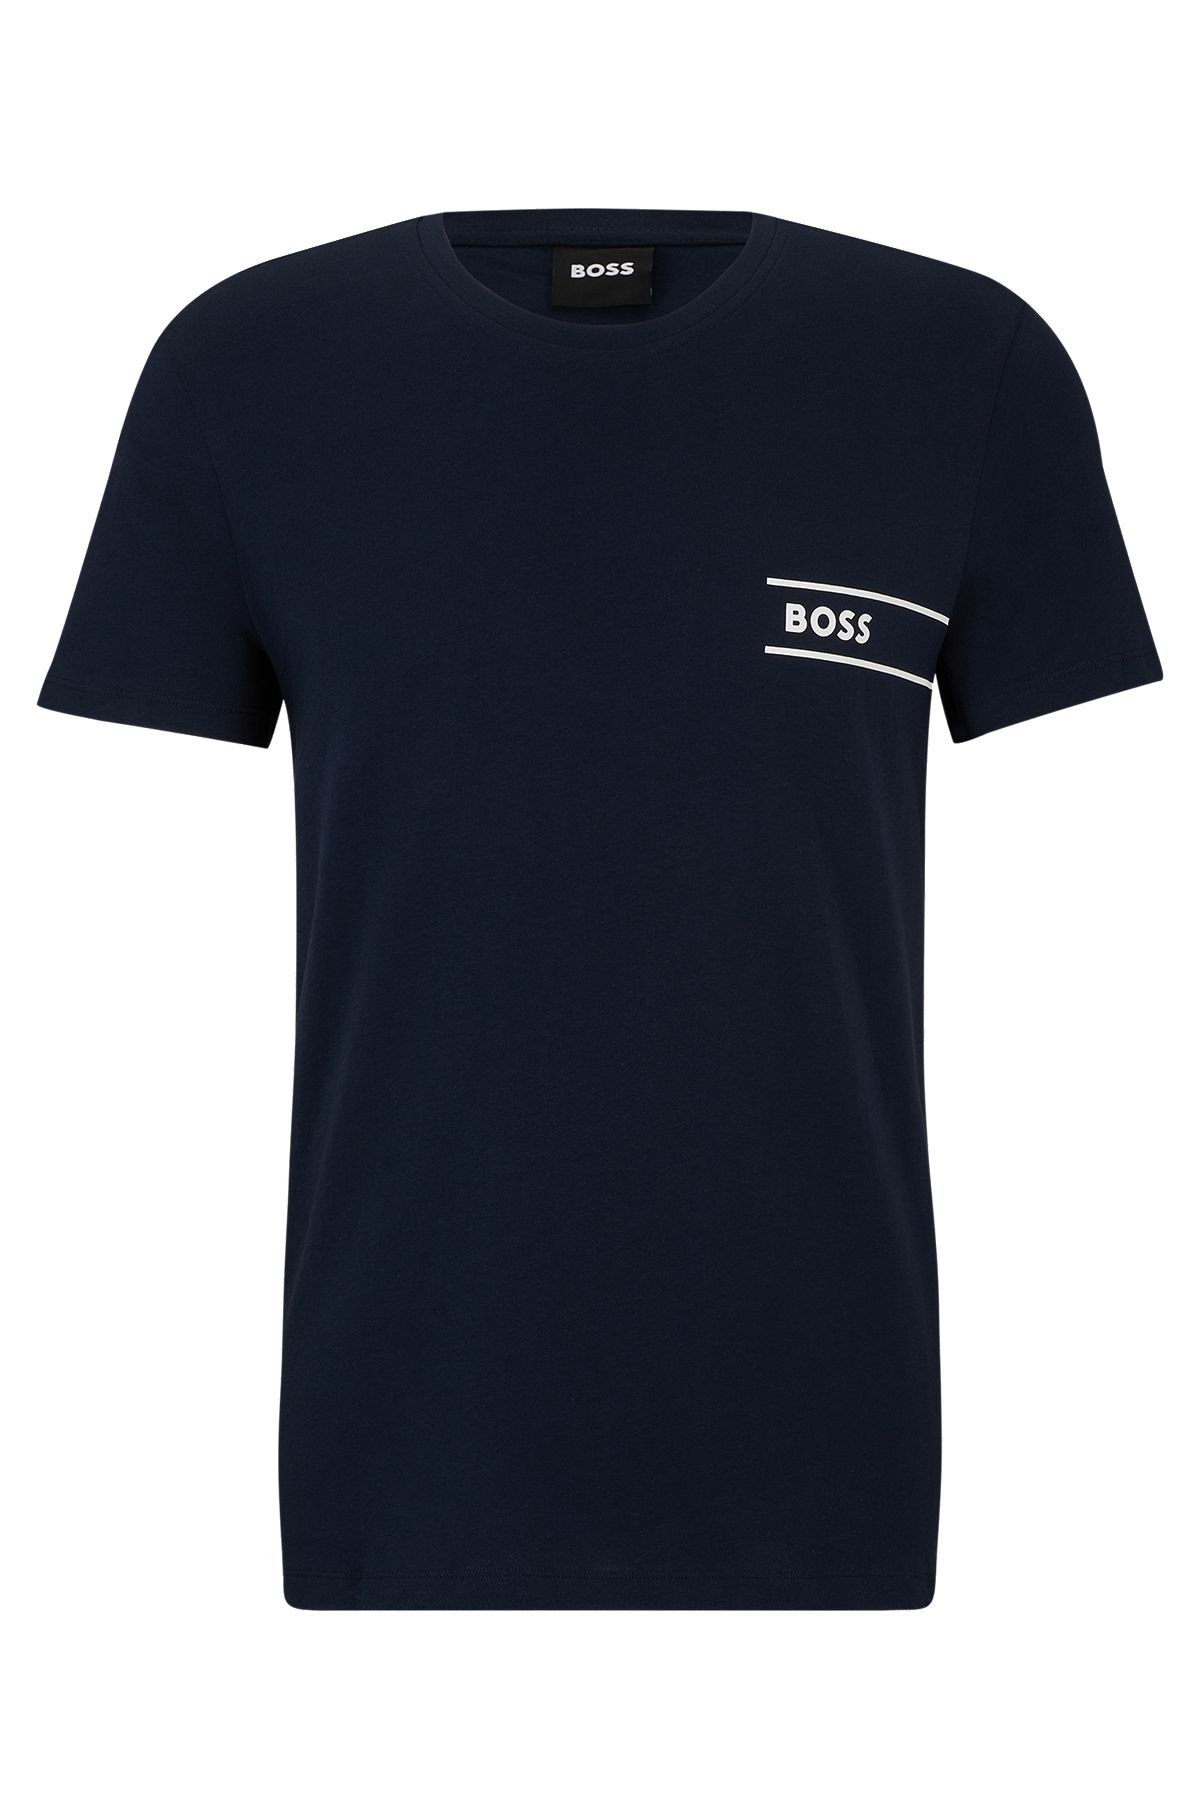 Cotton-jersey underwear T-shirt with logo and stripes, Dark Blue